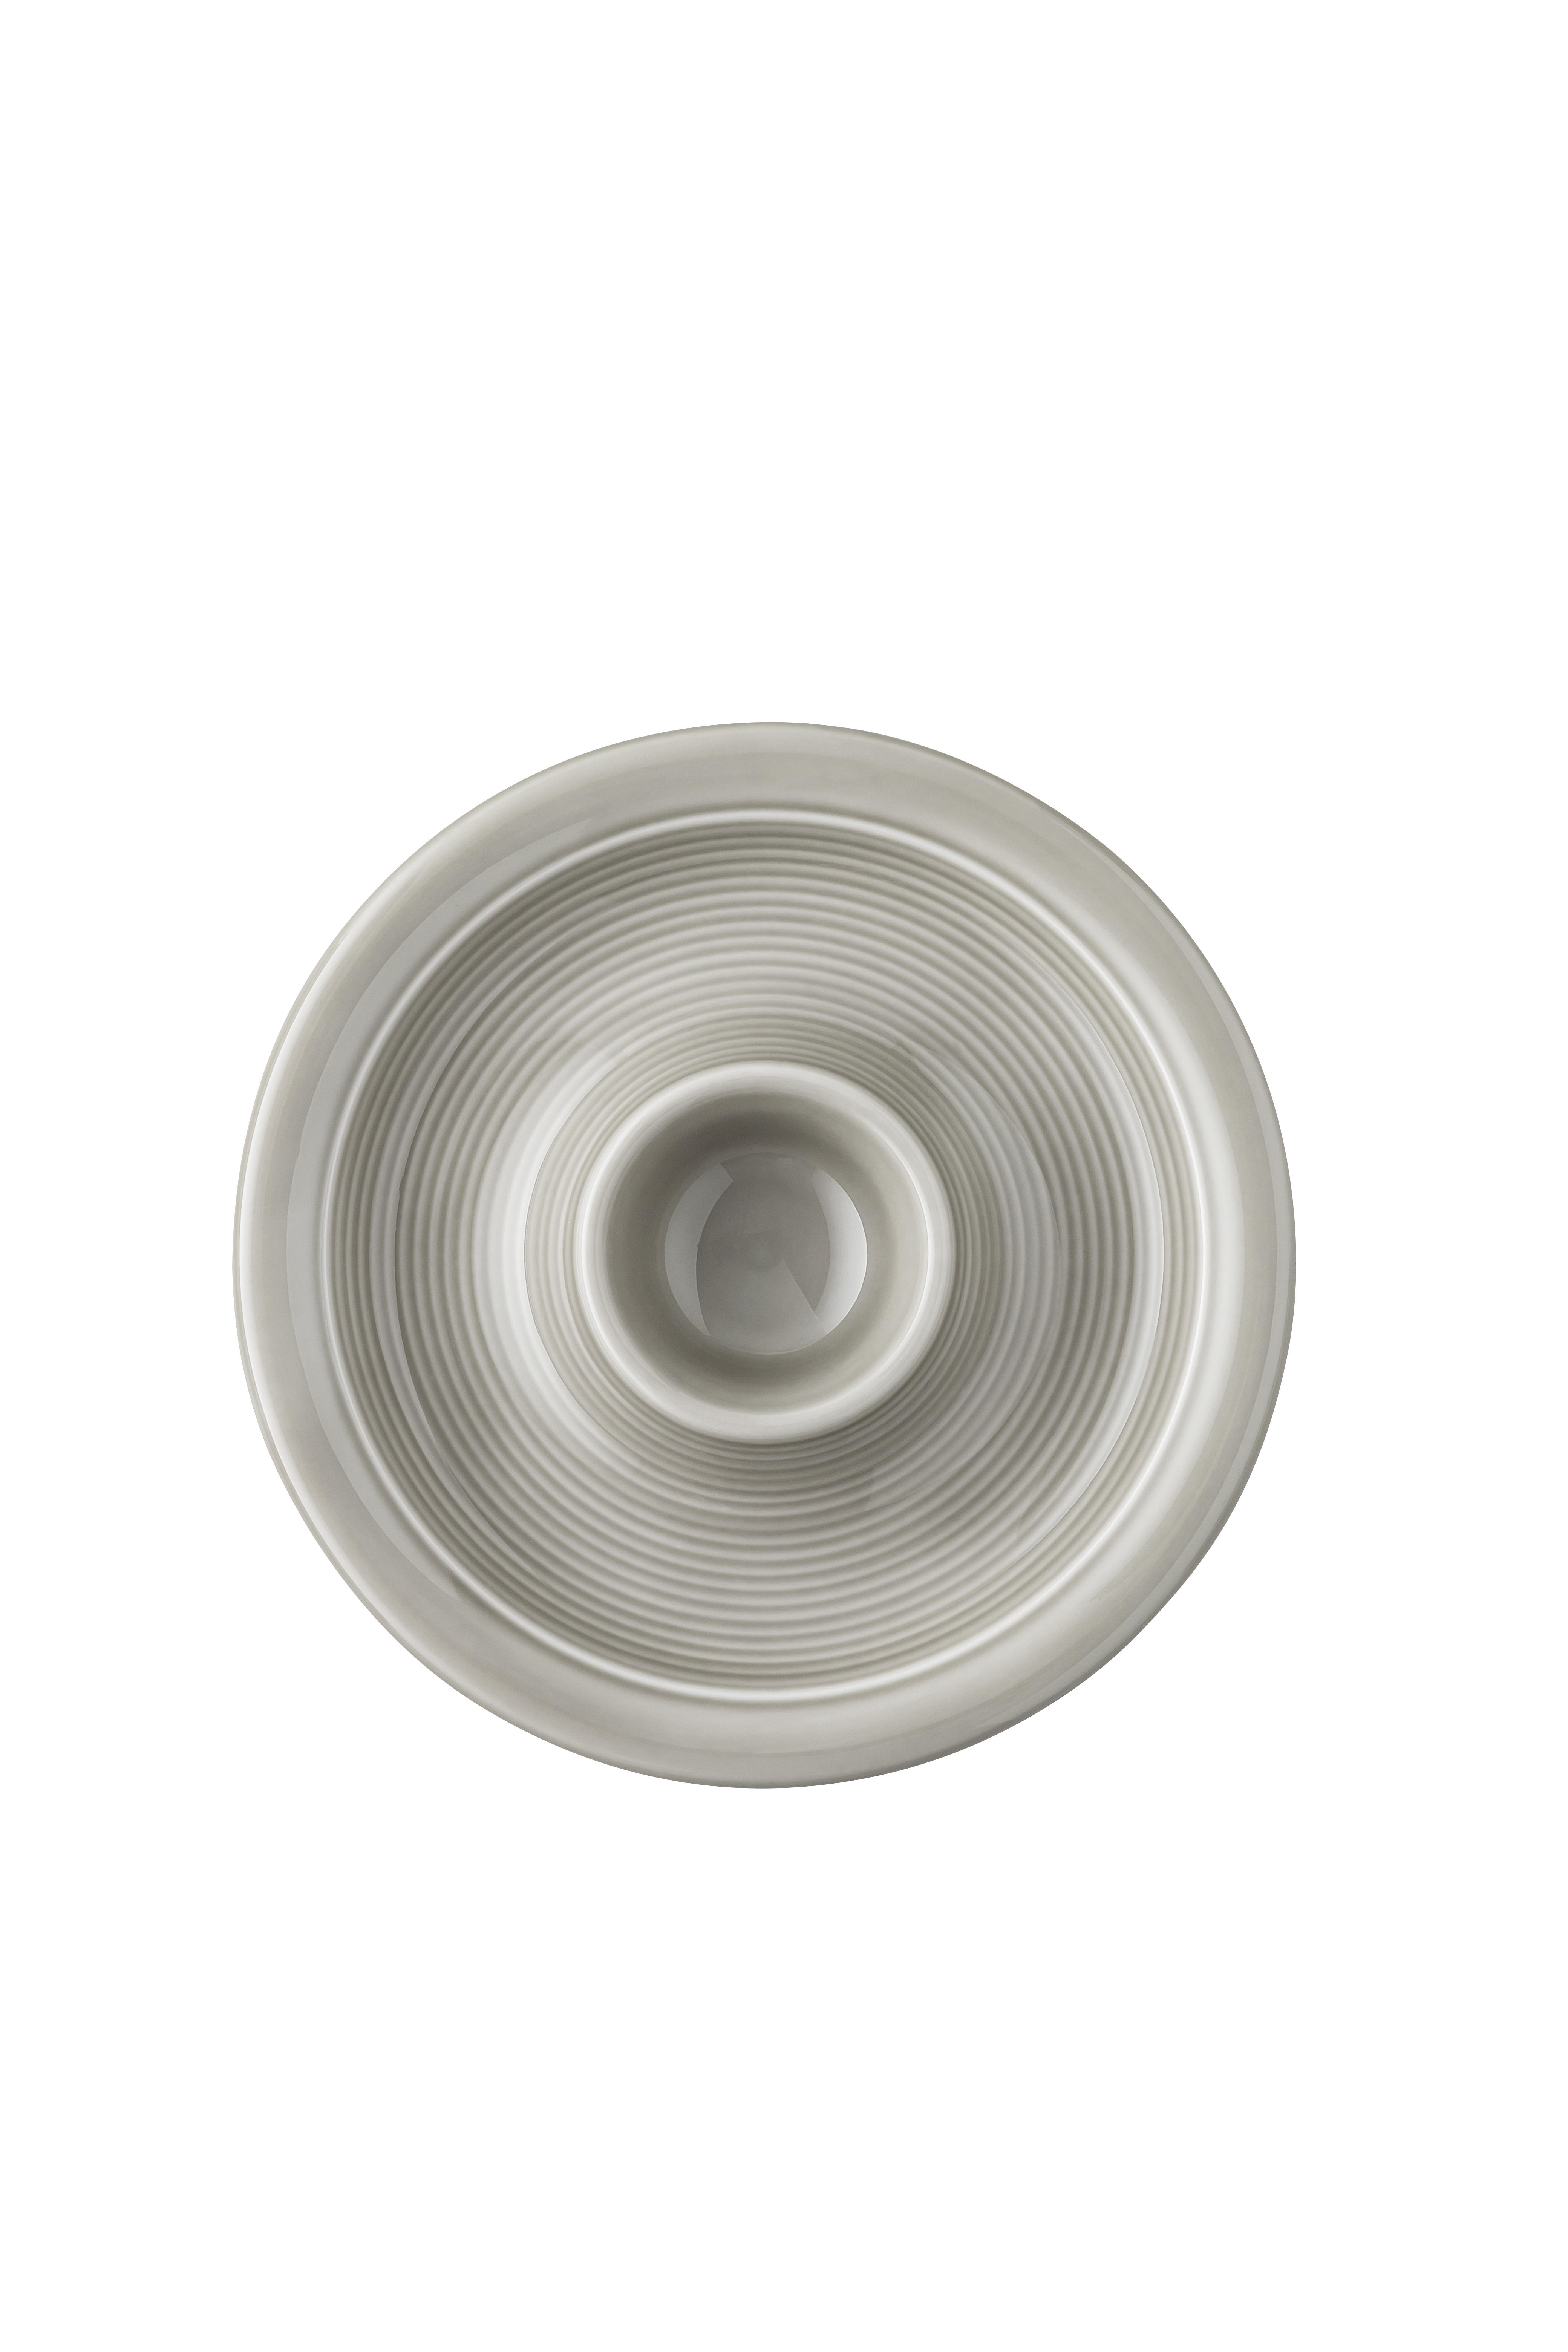 EIERBECHER Keramik Porzellan  - Grau, Design, Keramik (14/2,5cm) - Thomas